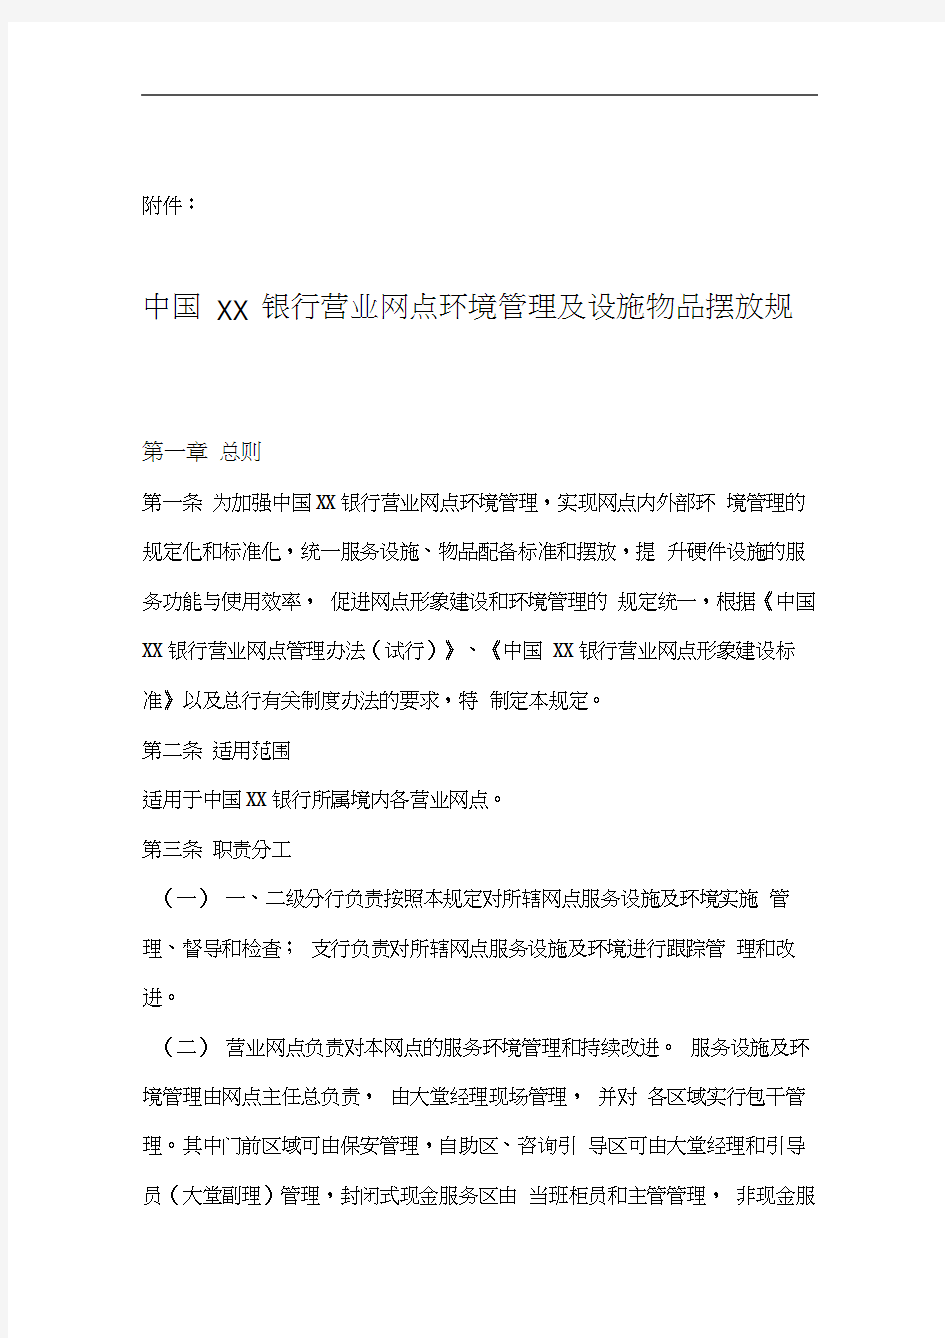 中国XX银行营业网点环境管理及设施物品摆放规定